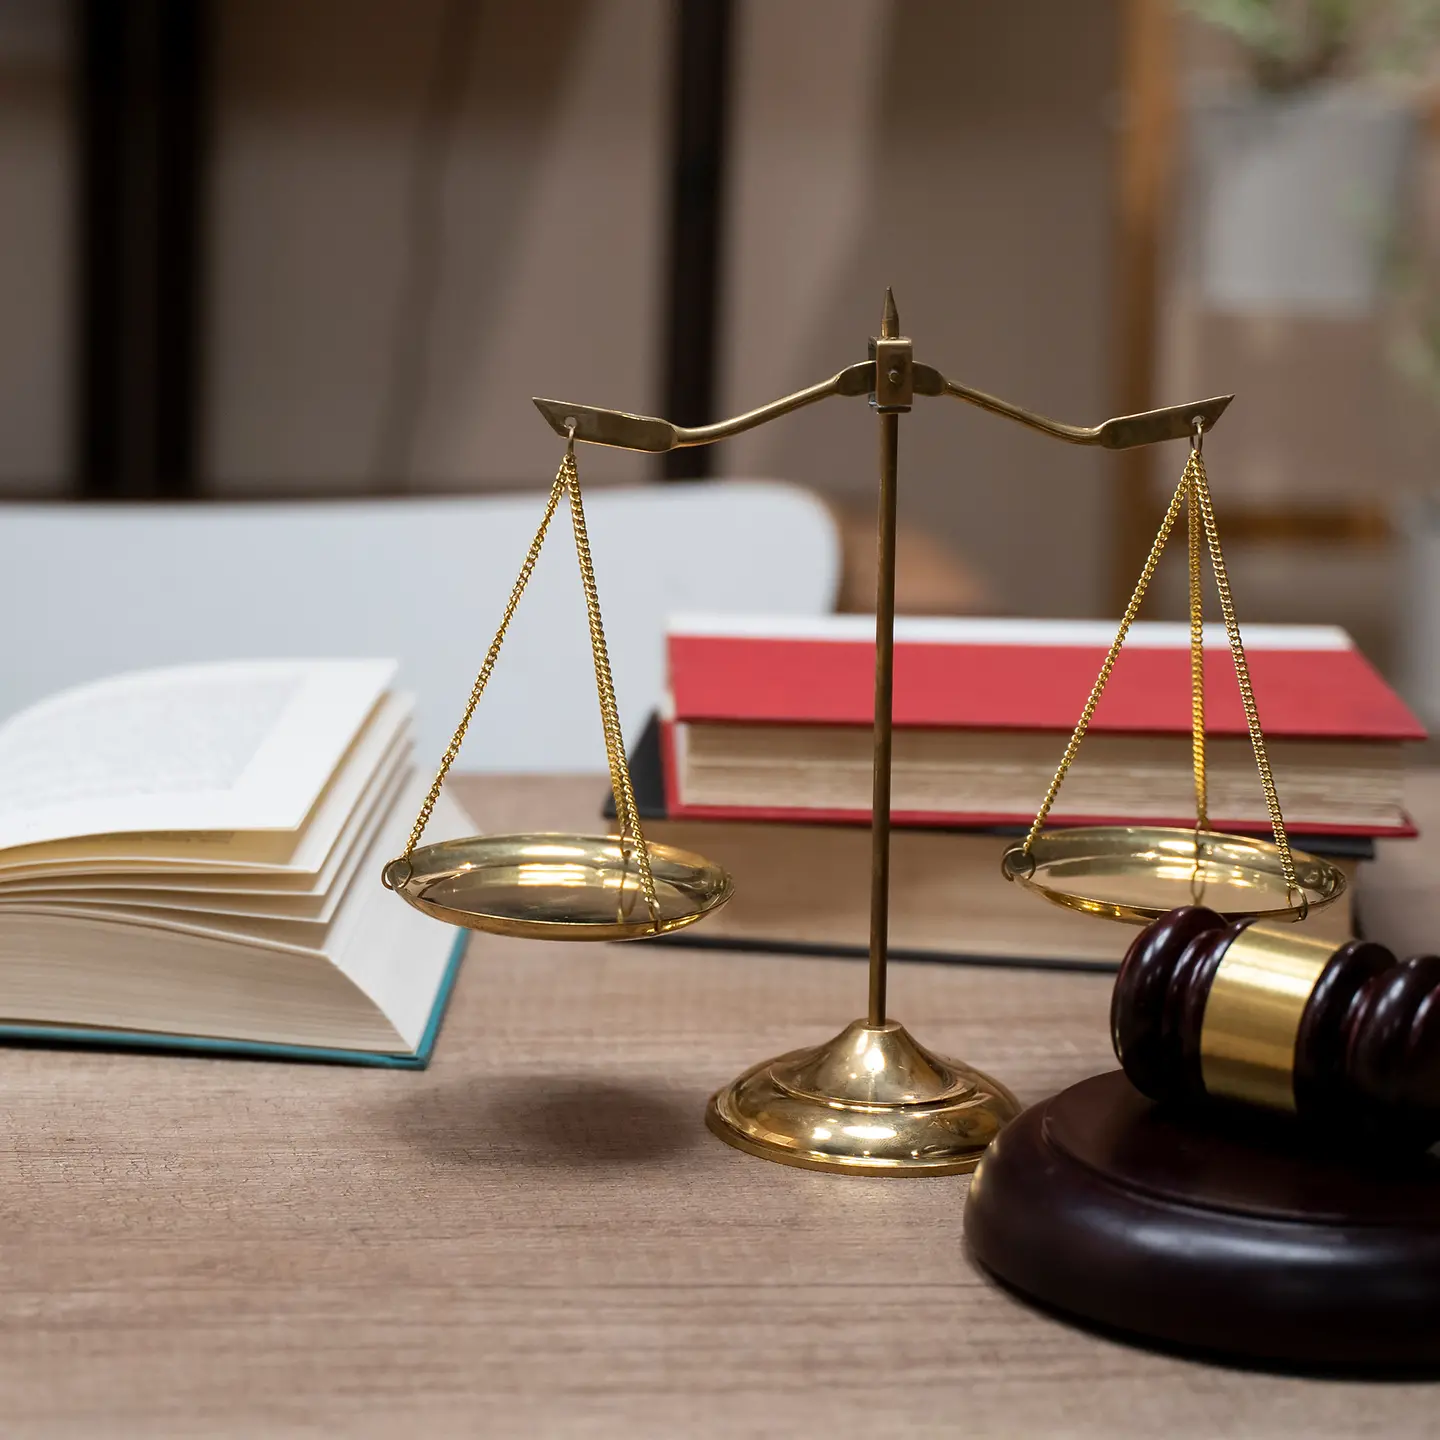 Gesetzesbücher und Symbole der Justiz